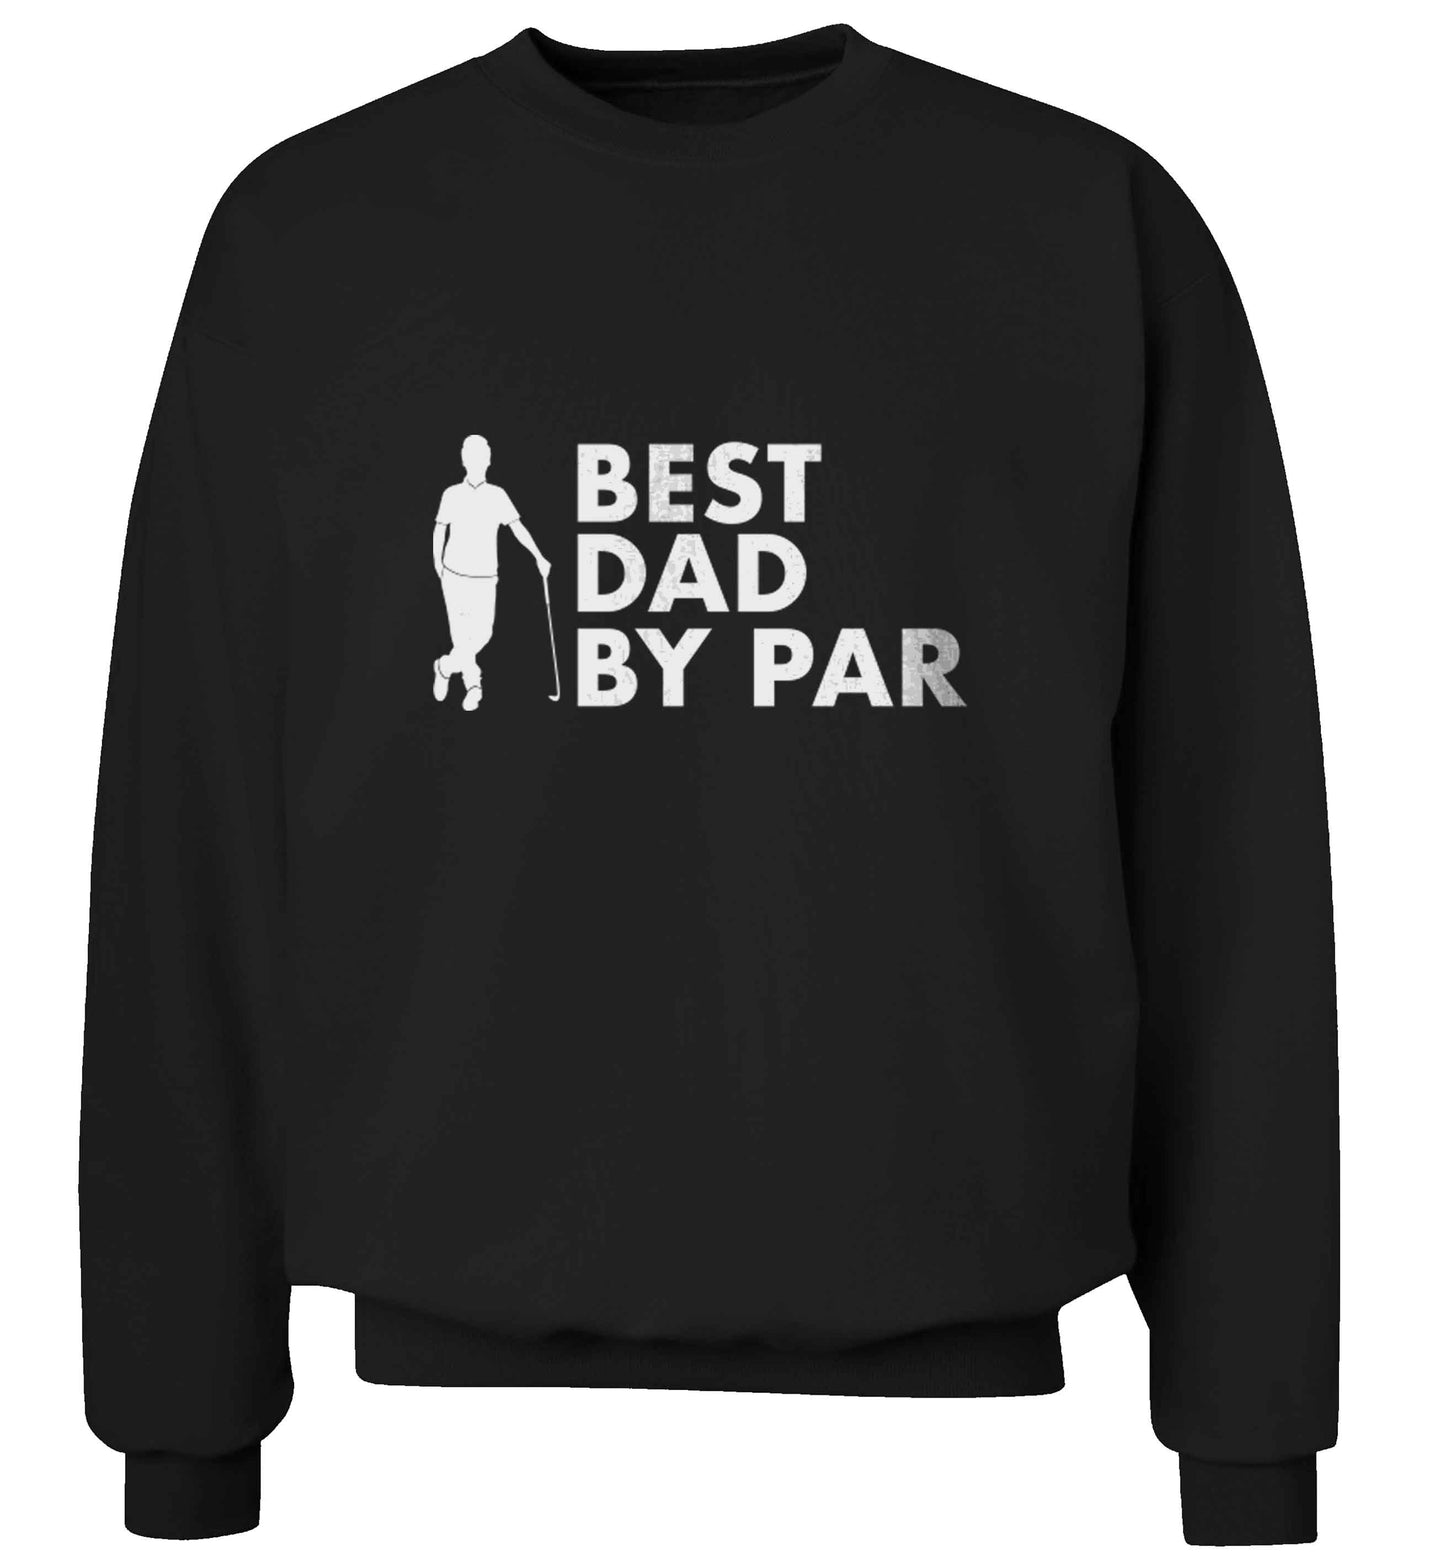 Best dad by par adult's unisex black sweater 2XL